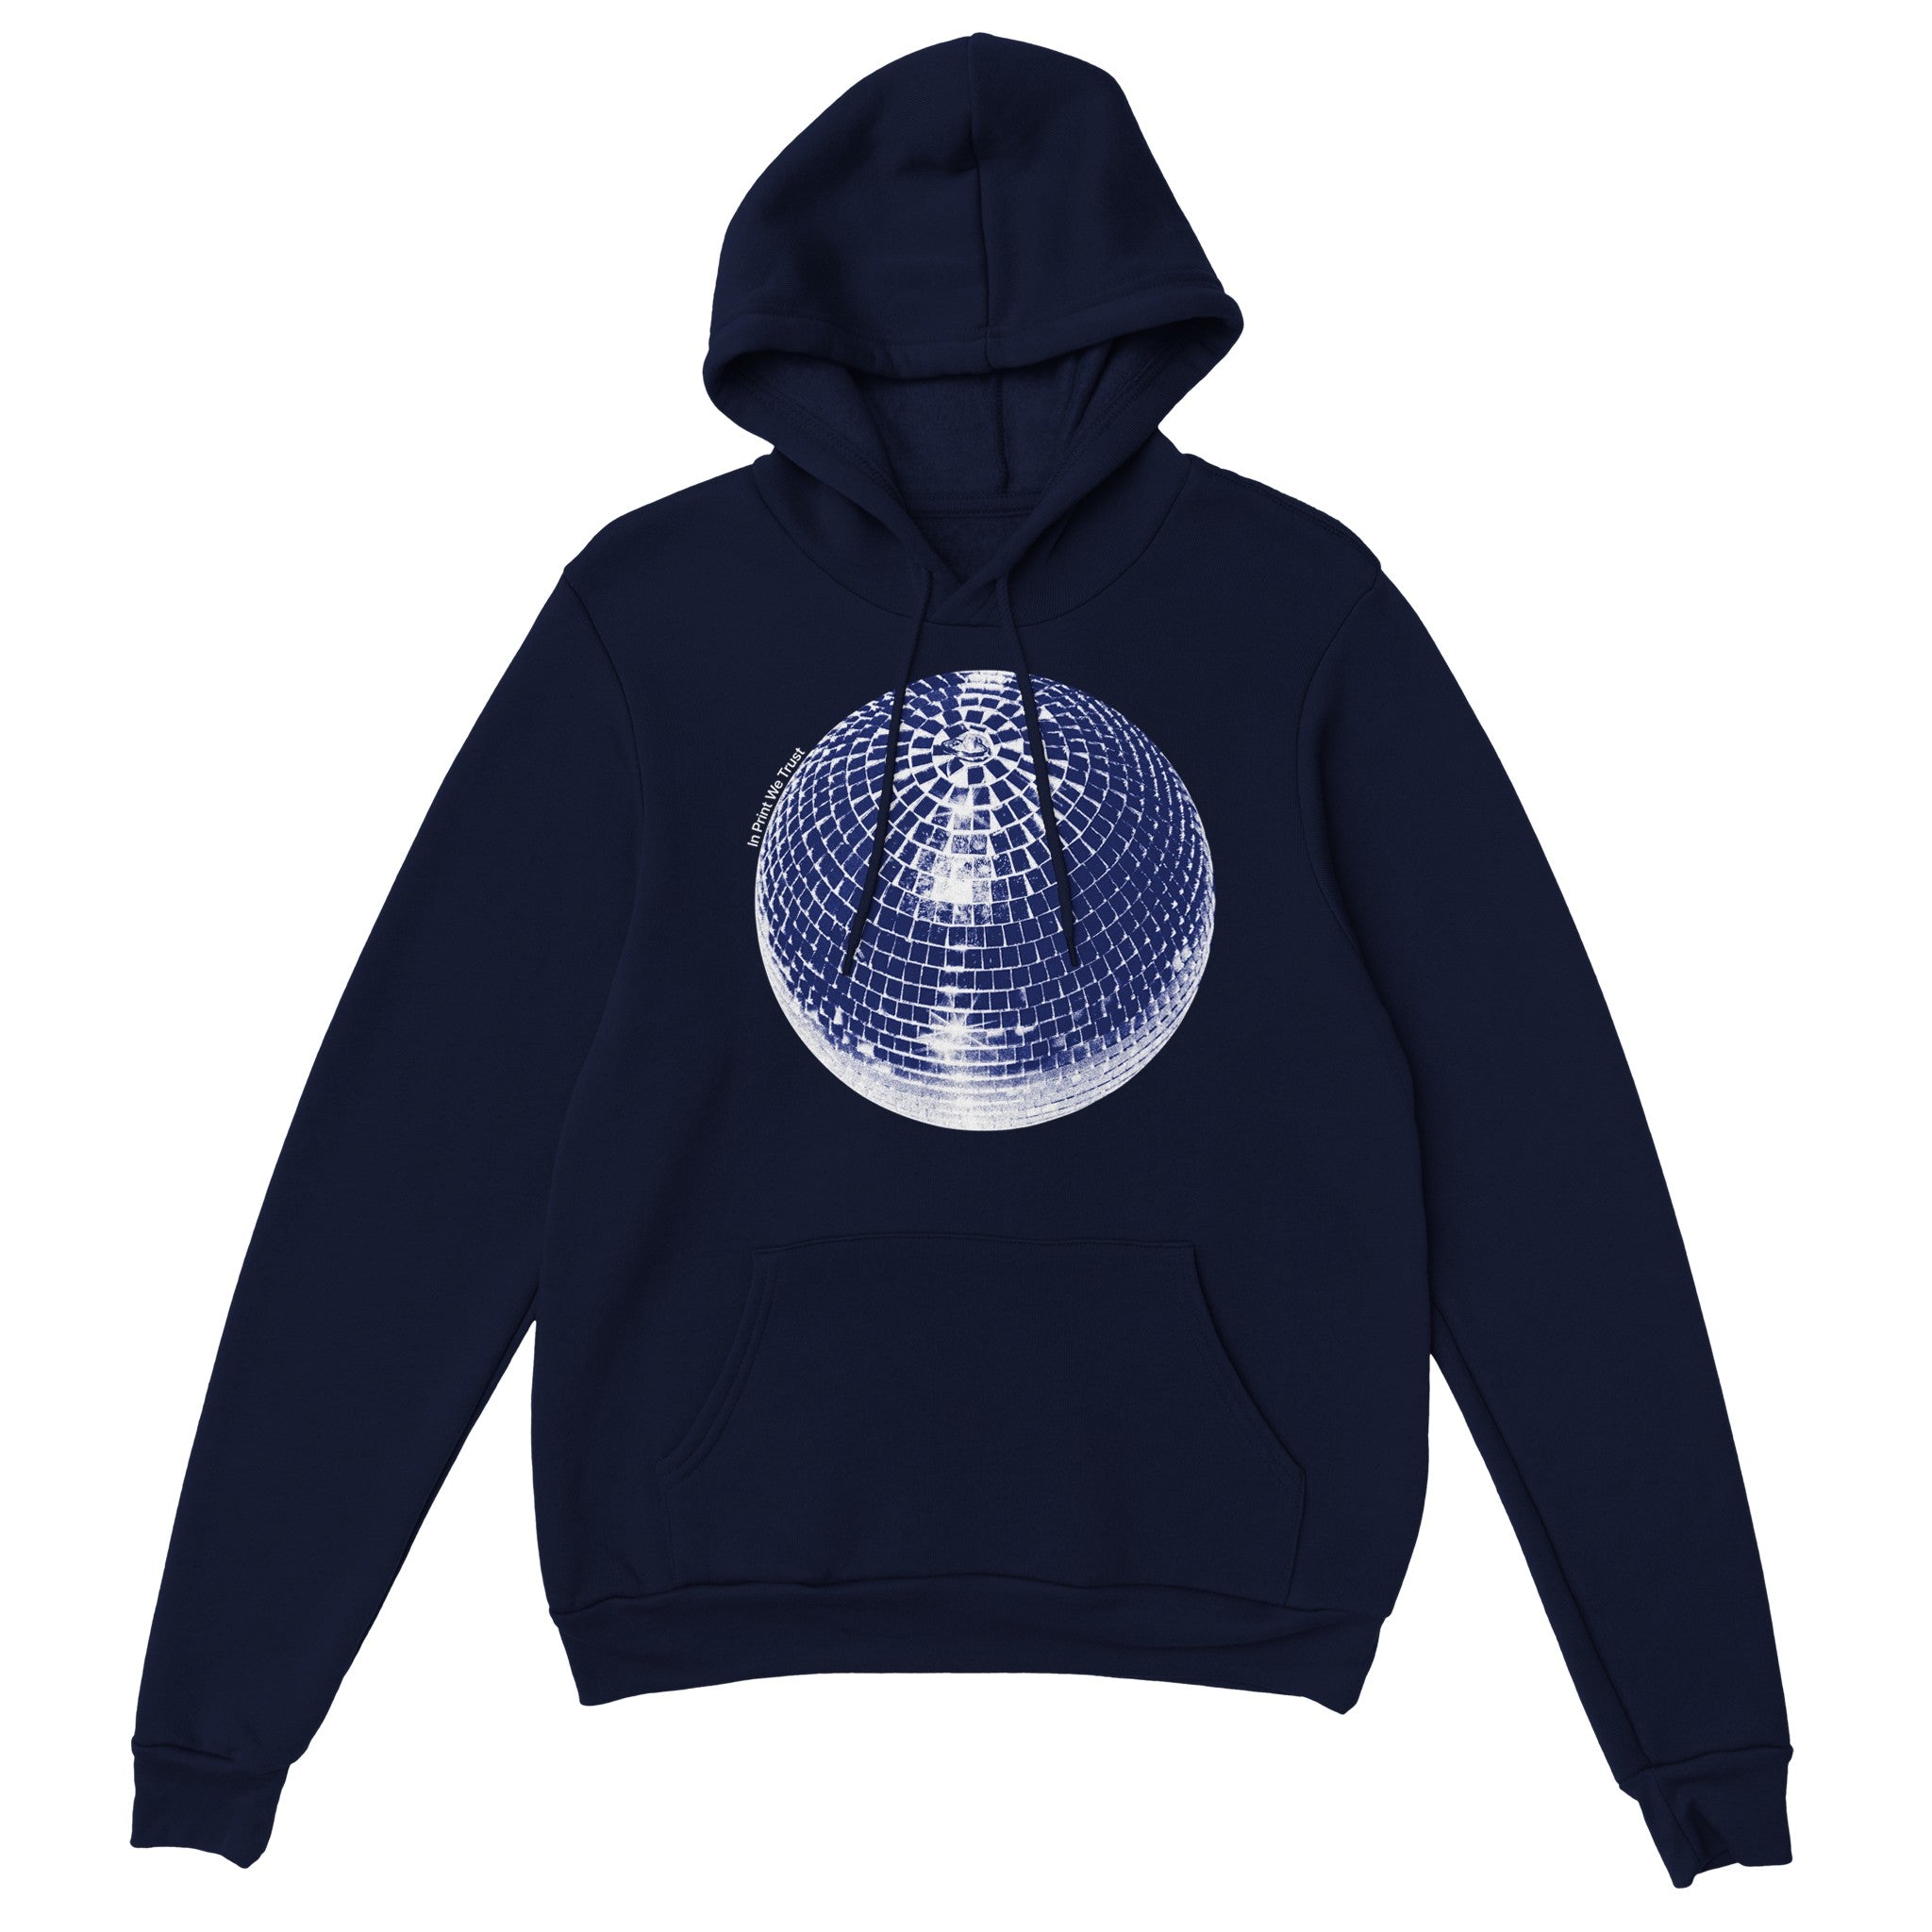 'Studio 54' hoodie